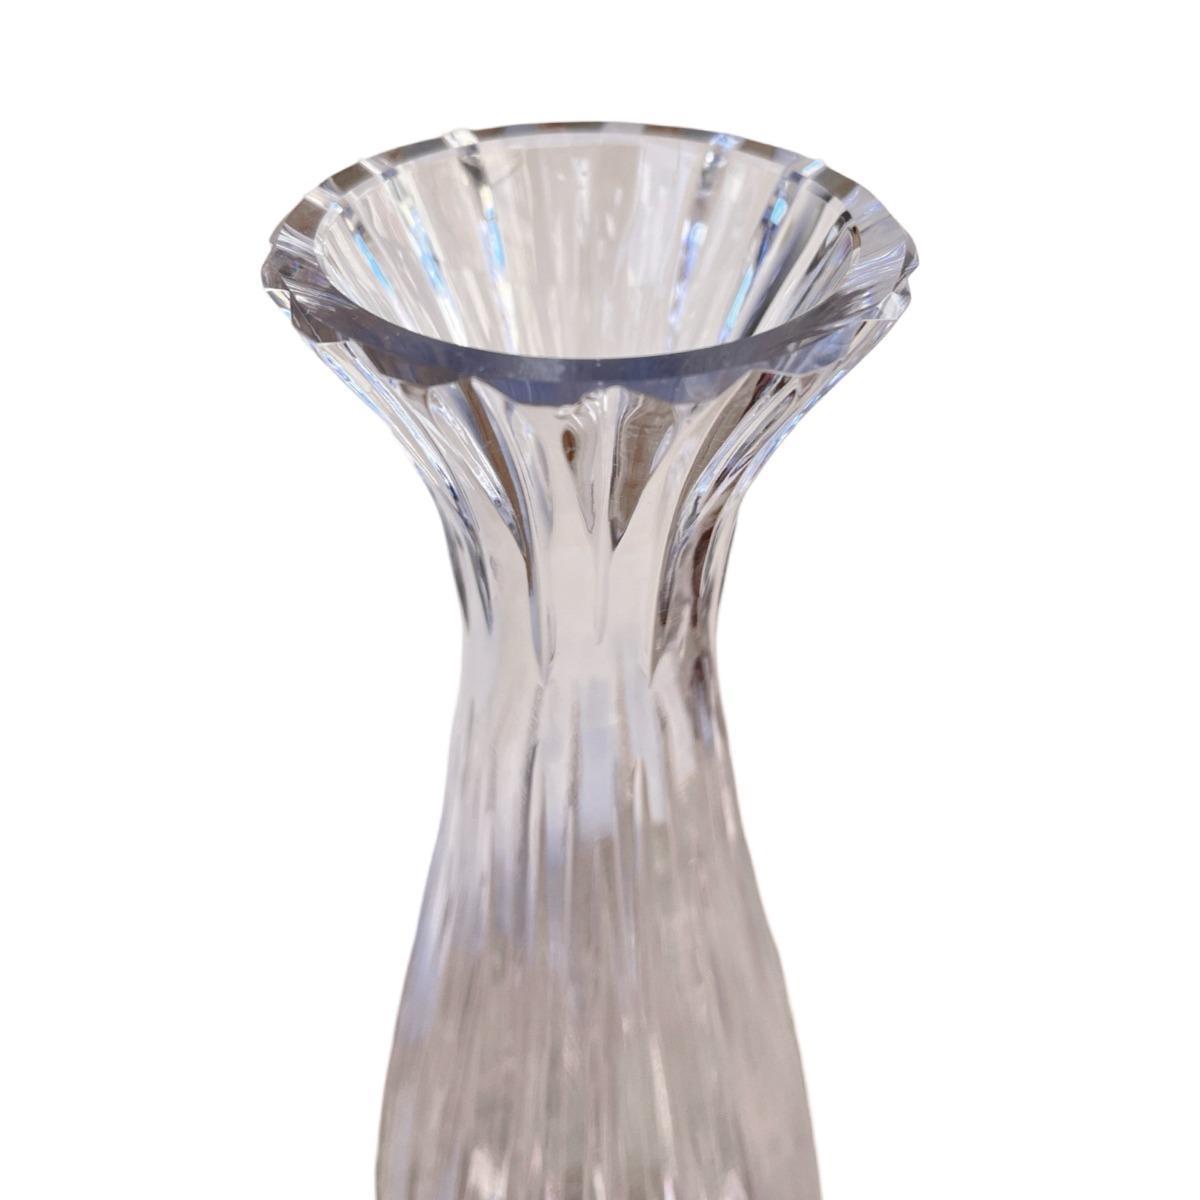 Kryształowy wazon, Noritake Bleikristall , Niemcy, lata 70. nr. 4